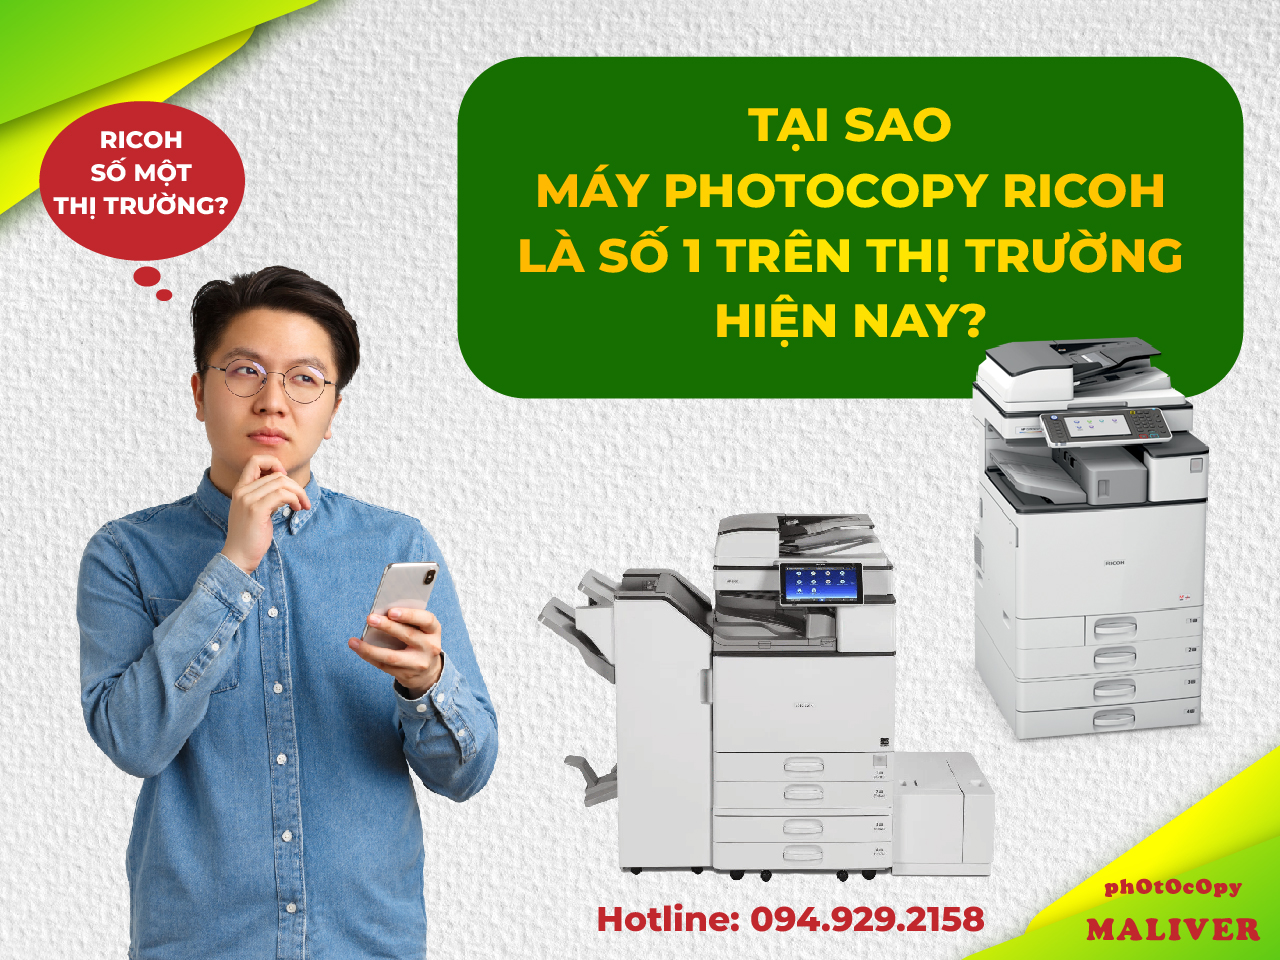 Tại sao máy photocopy Ricoh là số 1 trên thị trường hiện nay?